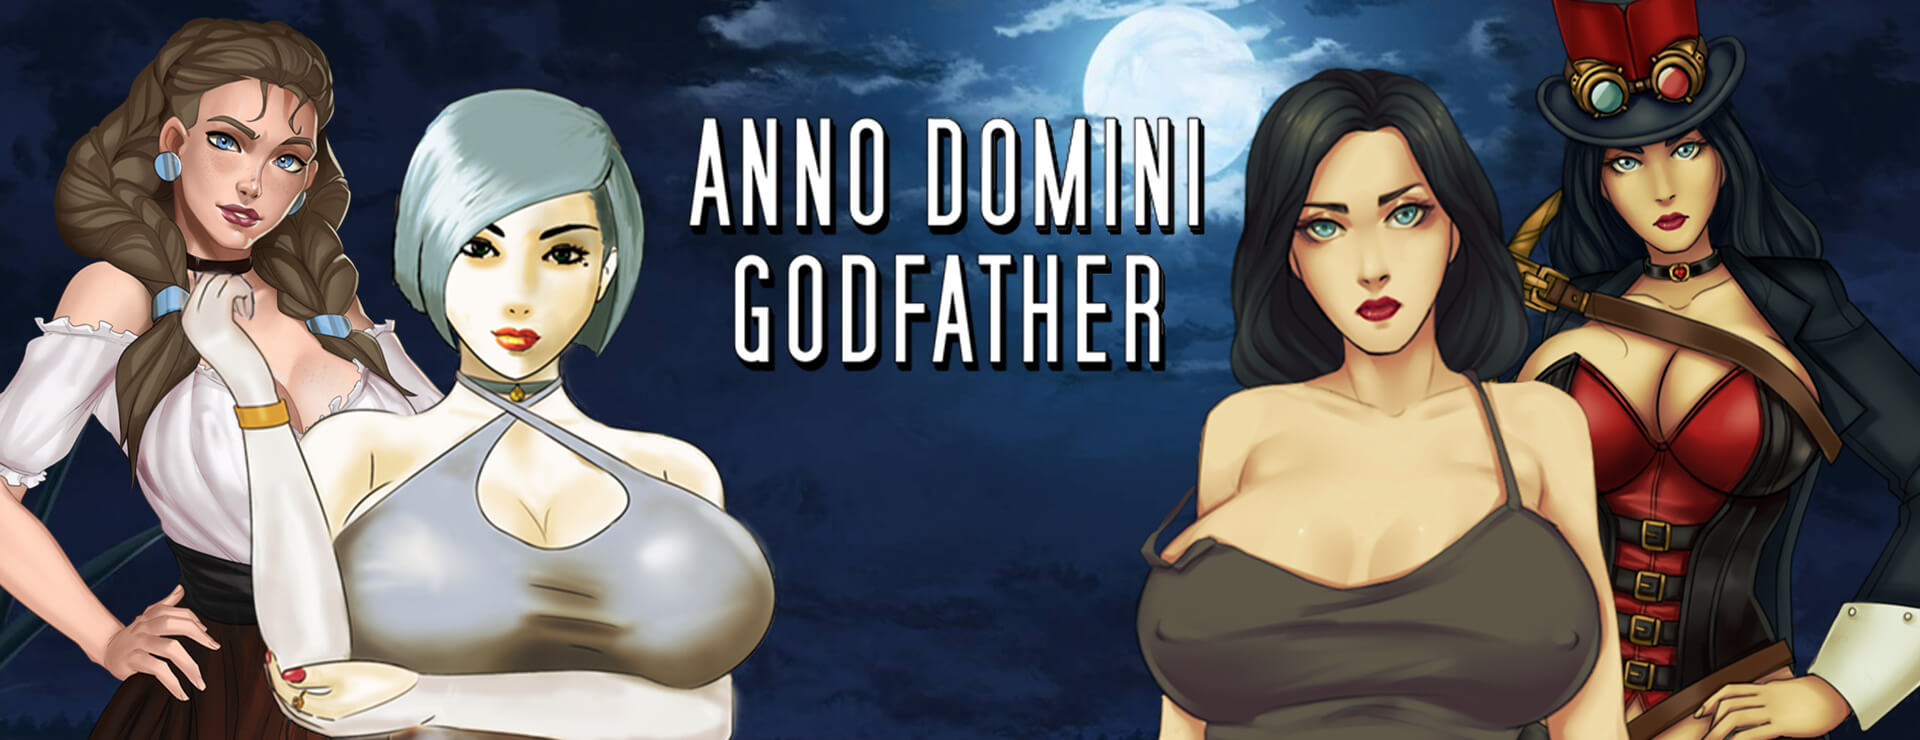 Anno Domini Godfather - RPG Spiel